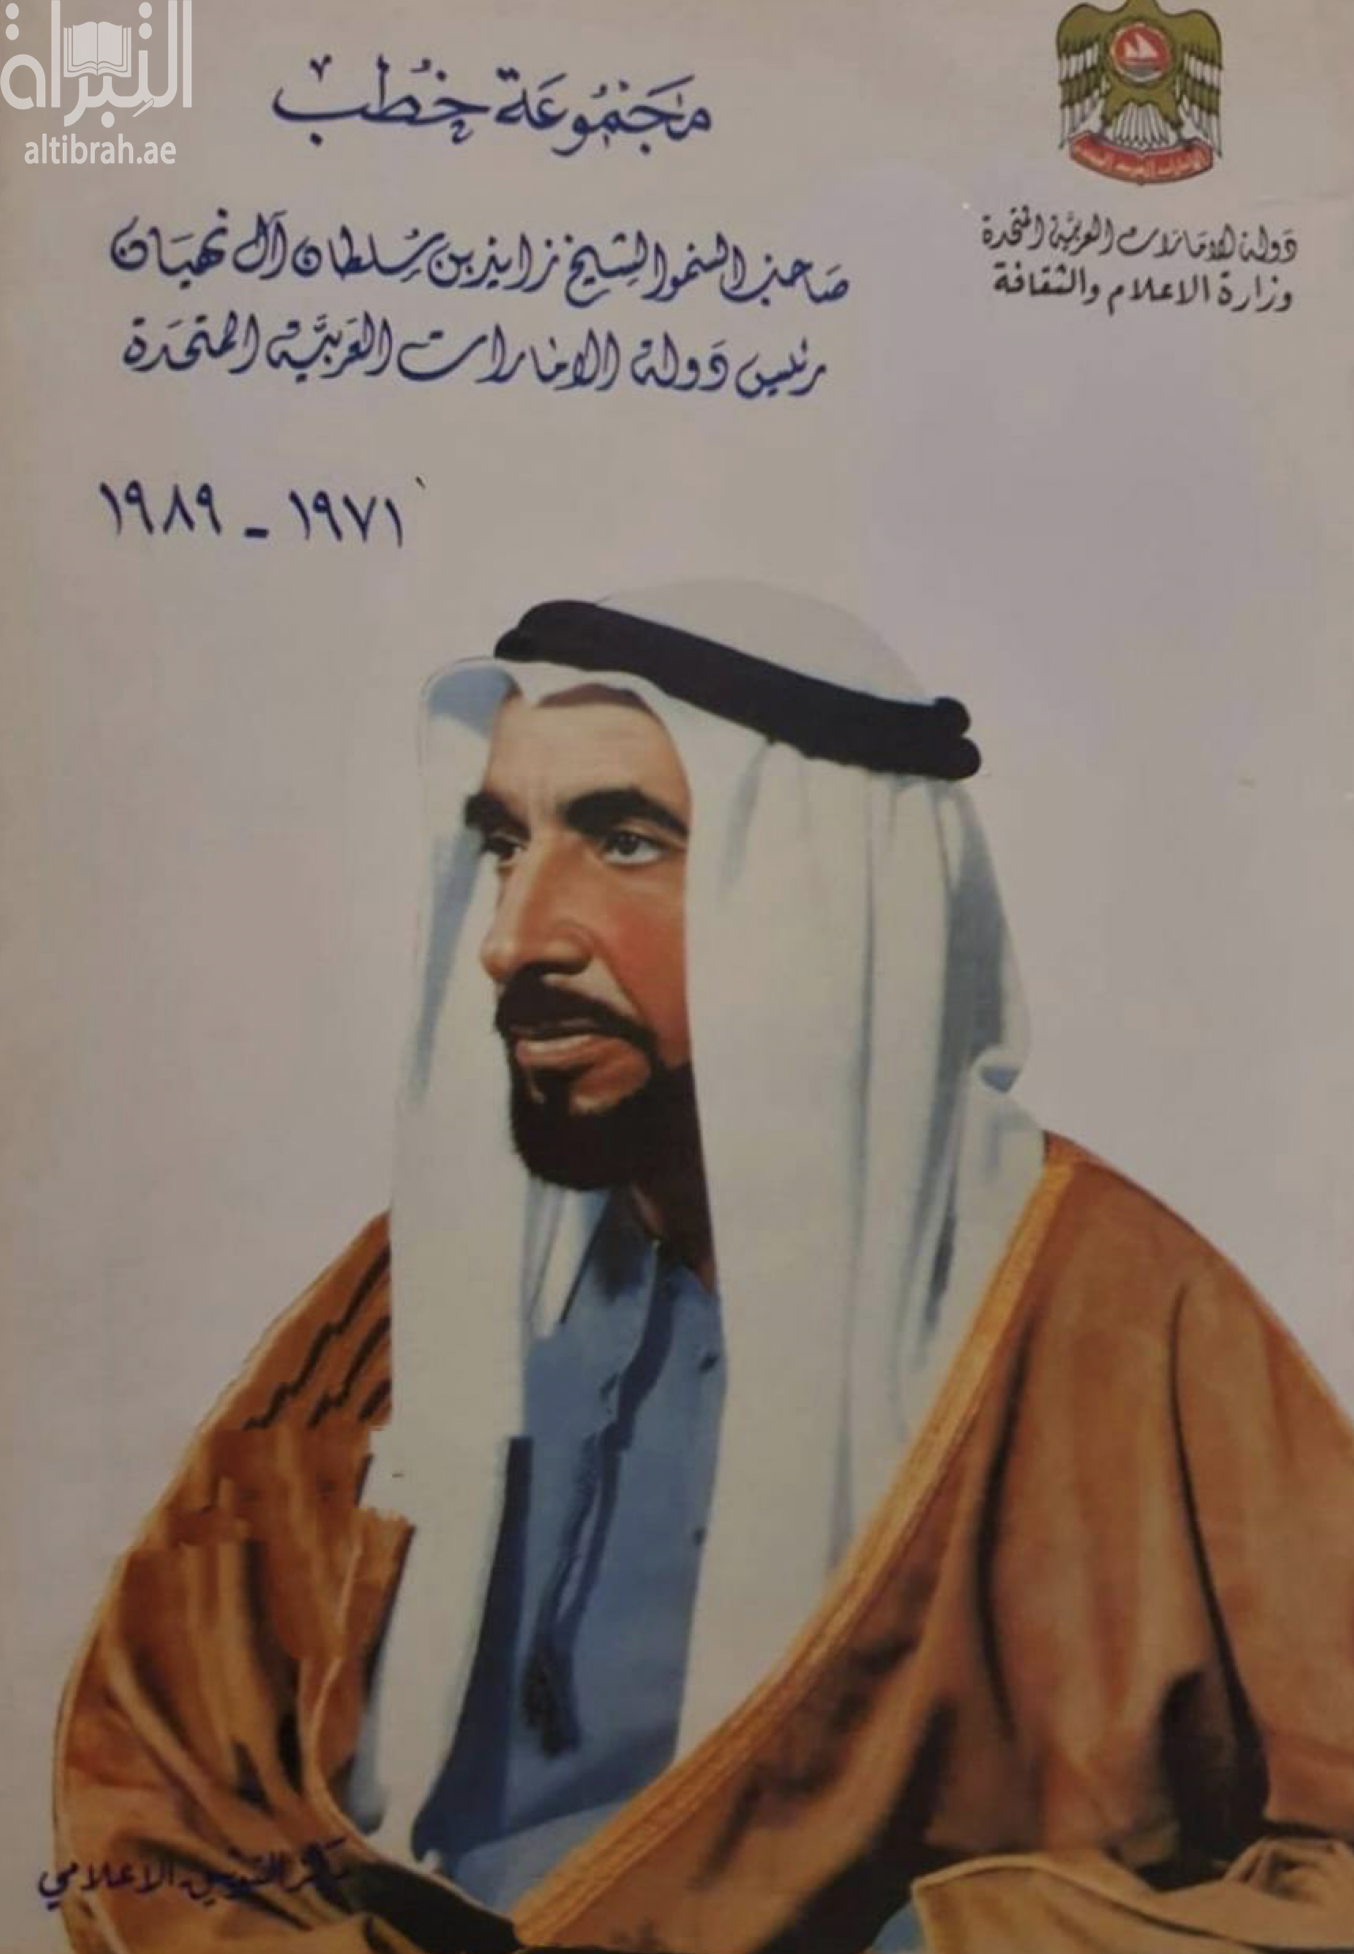 مجموعة خطب صاحب السمو الشيخ زايد بن سلطان آل نهيان رئيس دولة الإمارات العربية المتحدة 1971 - 1989 م